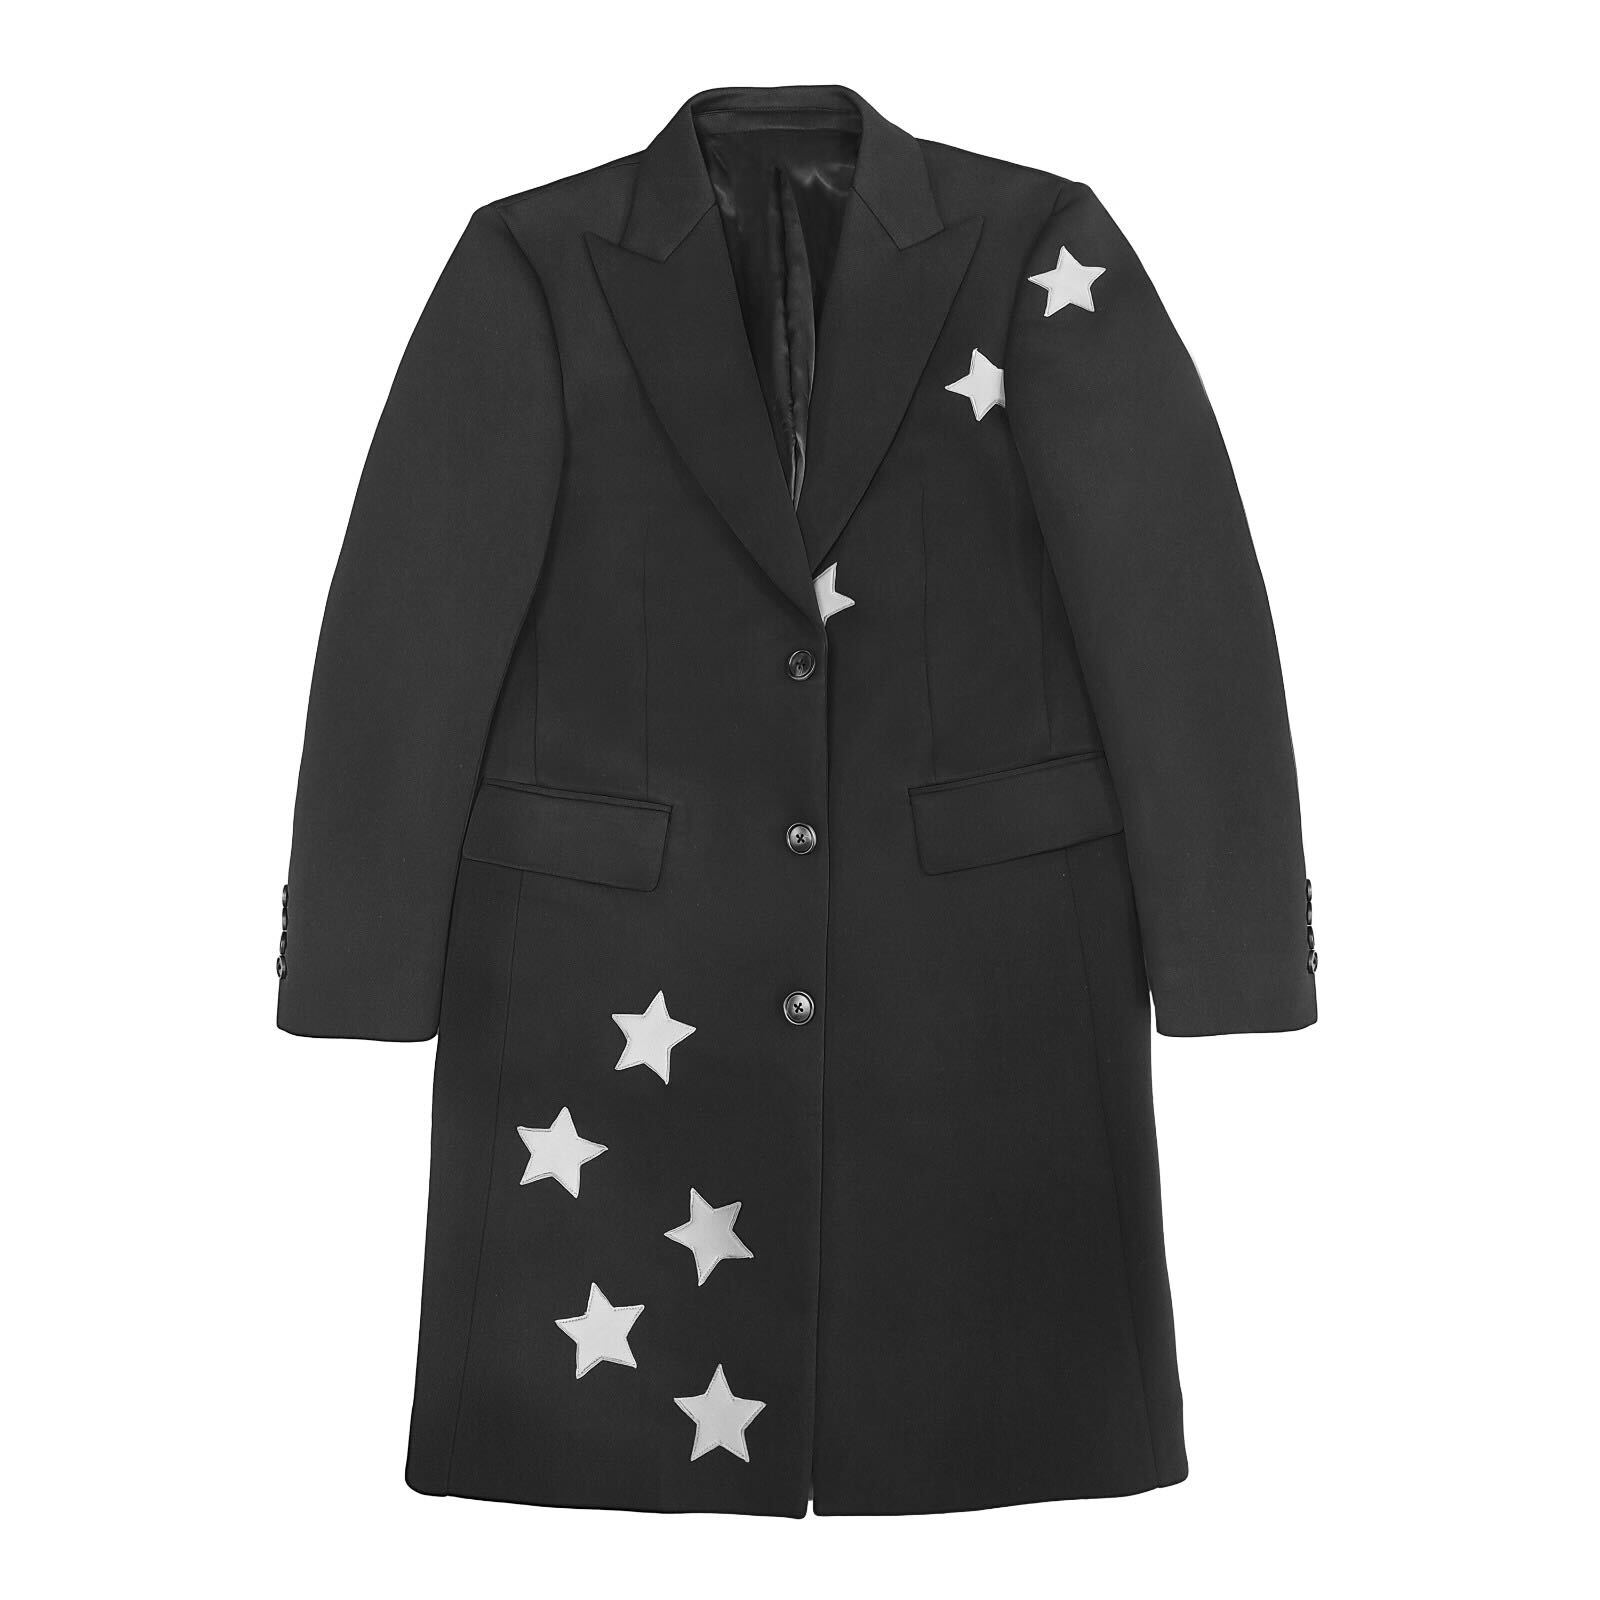 Overcoat - Black/White Stars